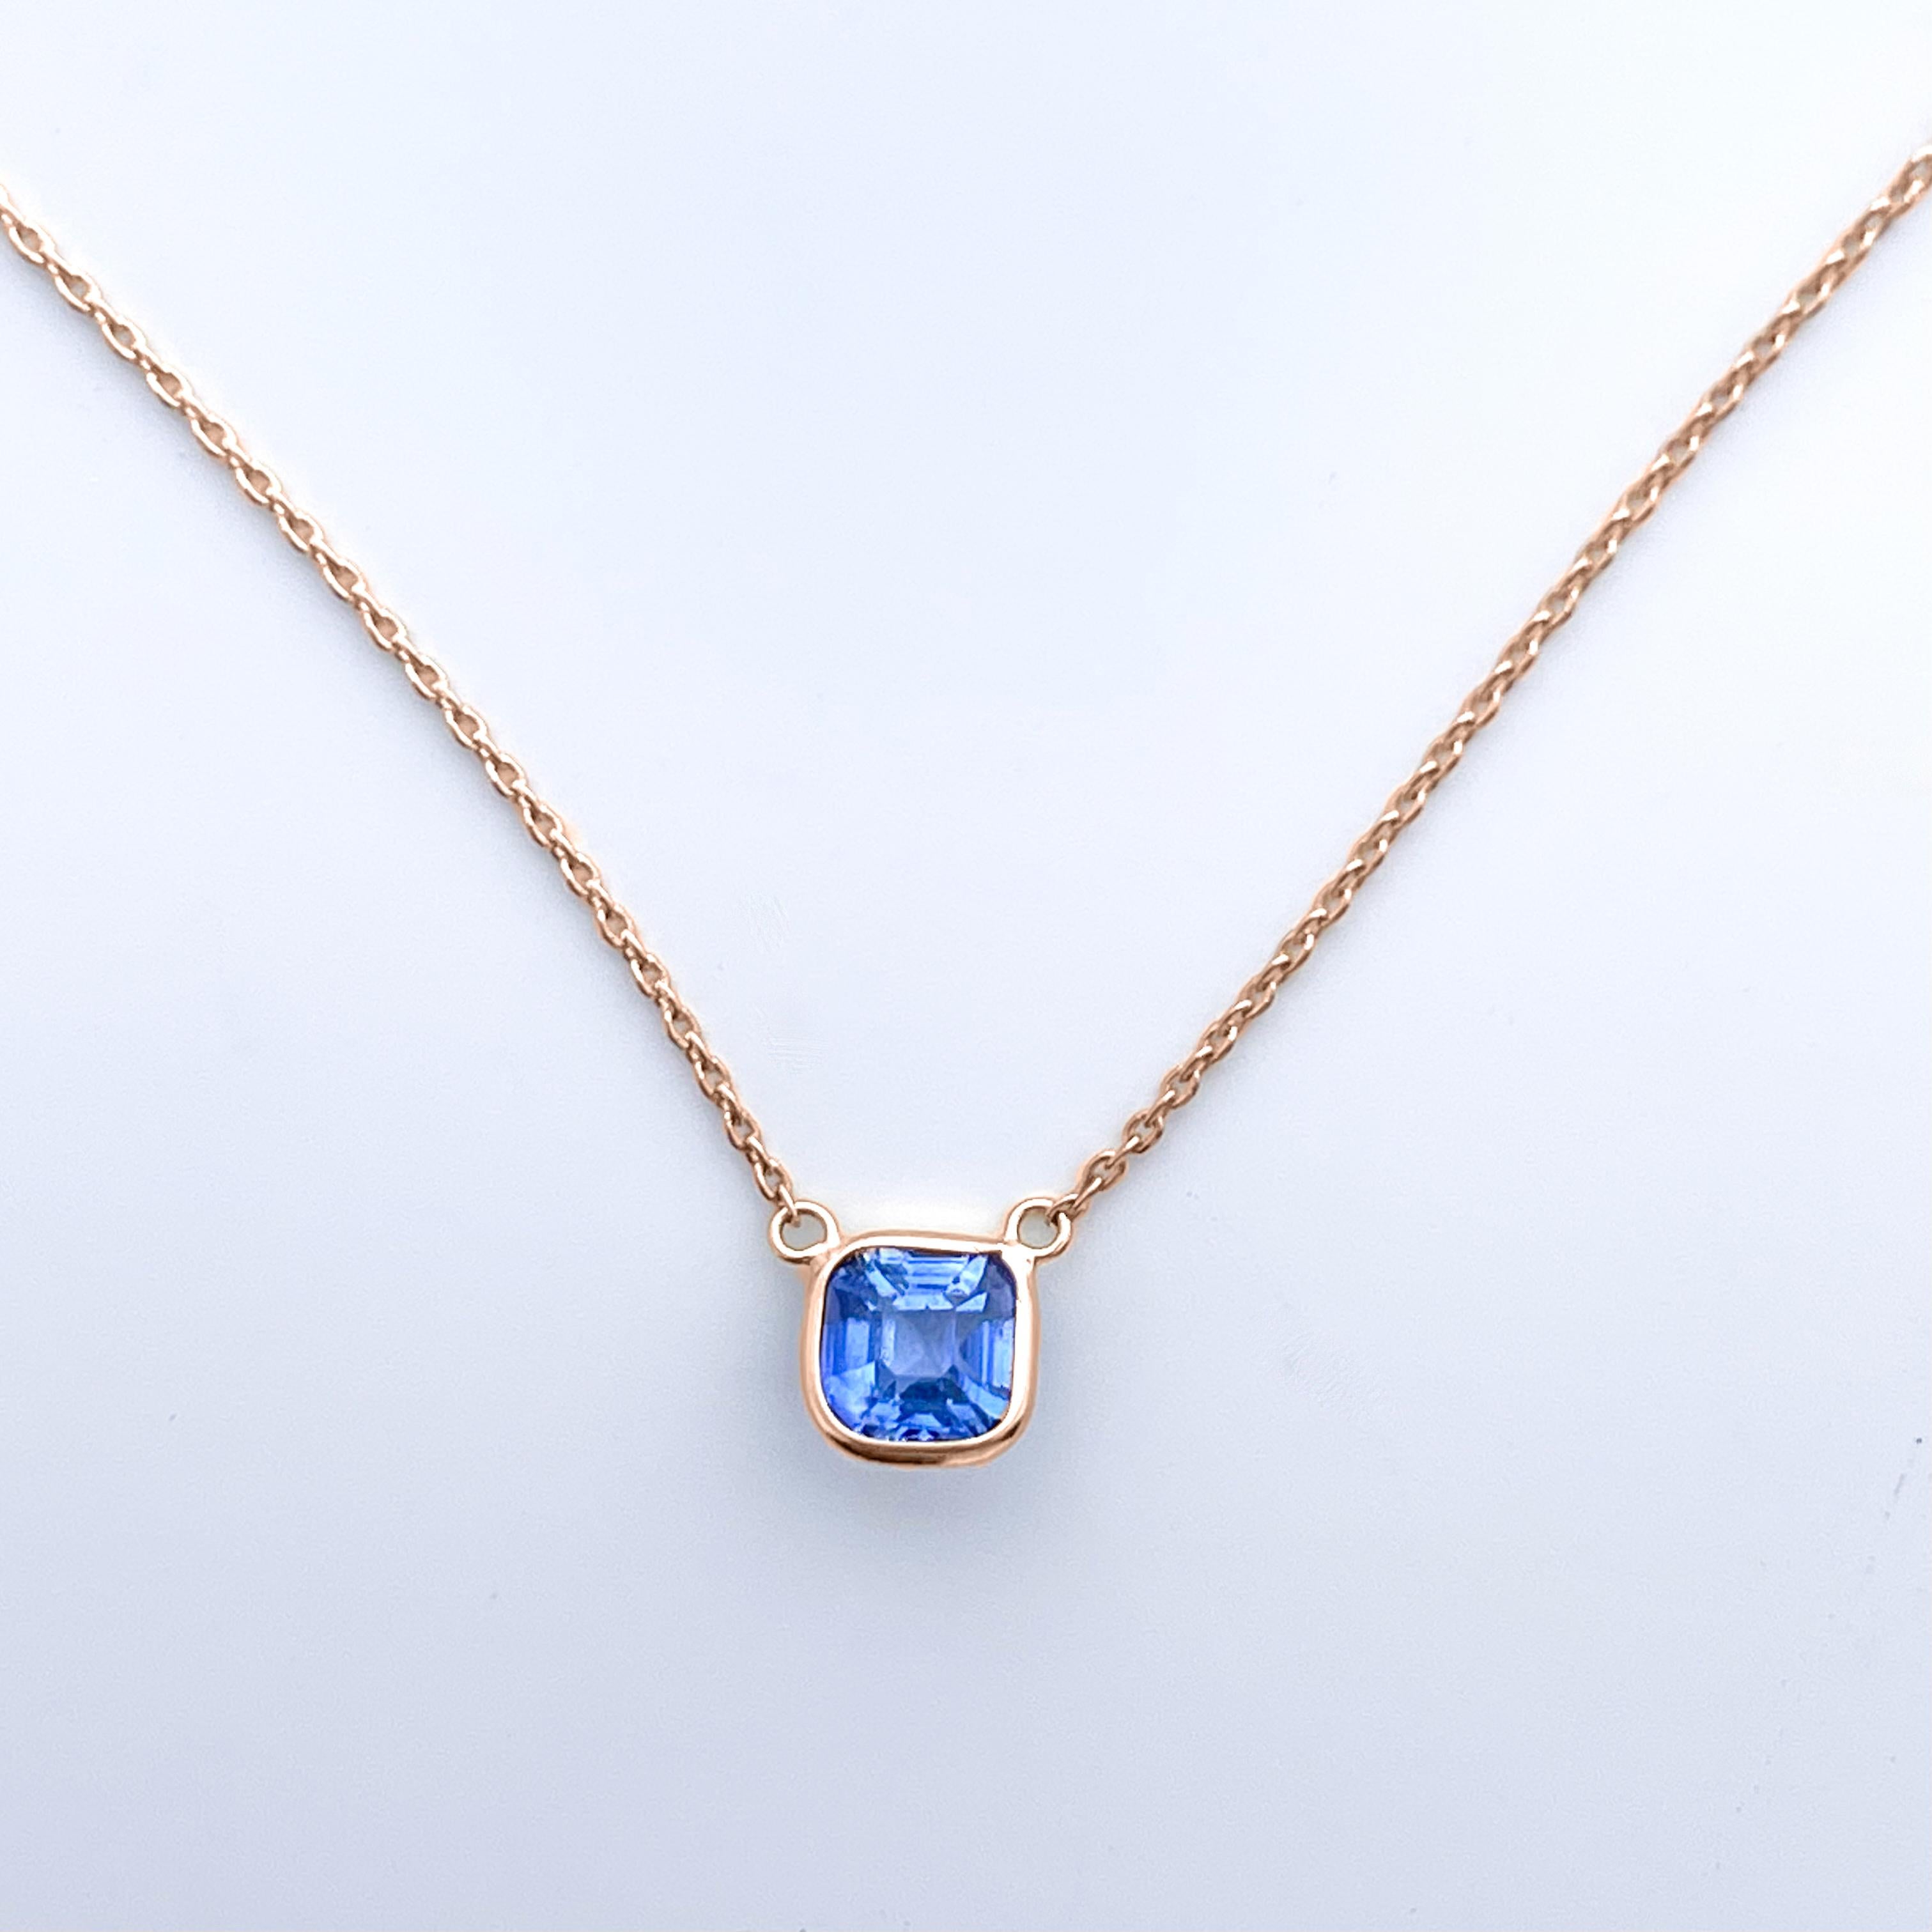 Asscher Cut 1.66 Carat Sapphire Blue Asscher &Fashion Necklaces Berberyn Certified In 14K RG For Sale